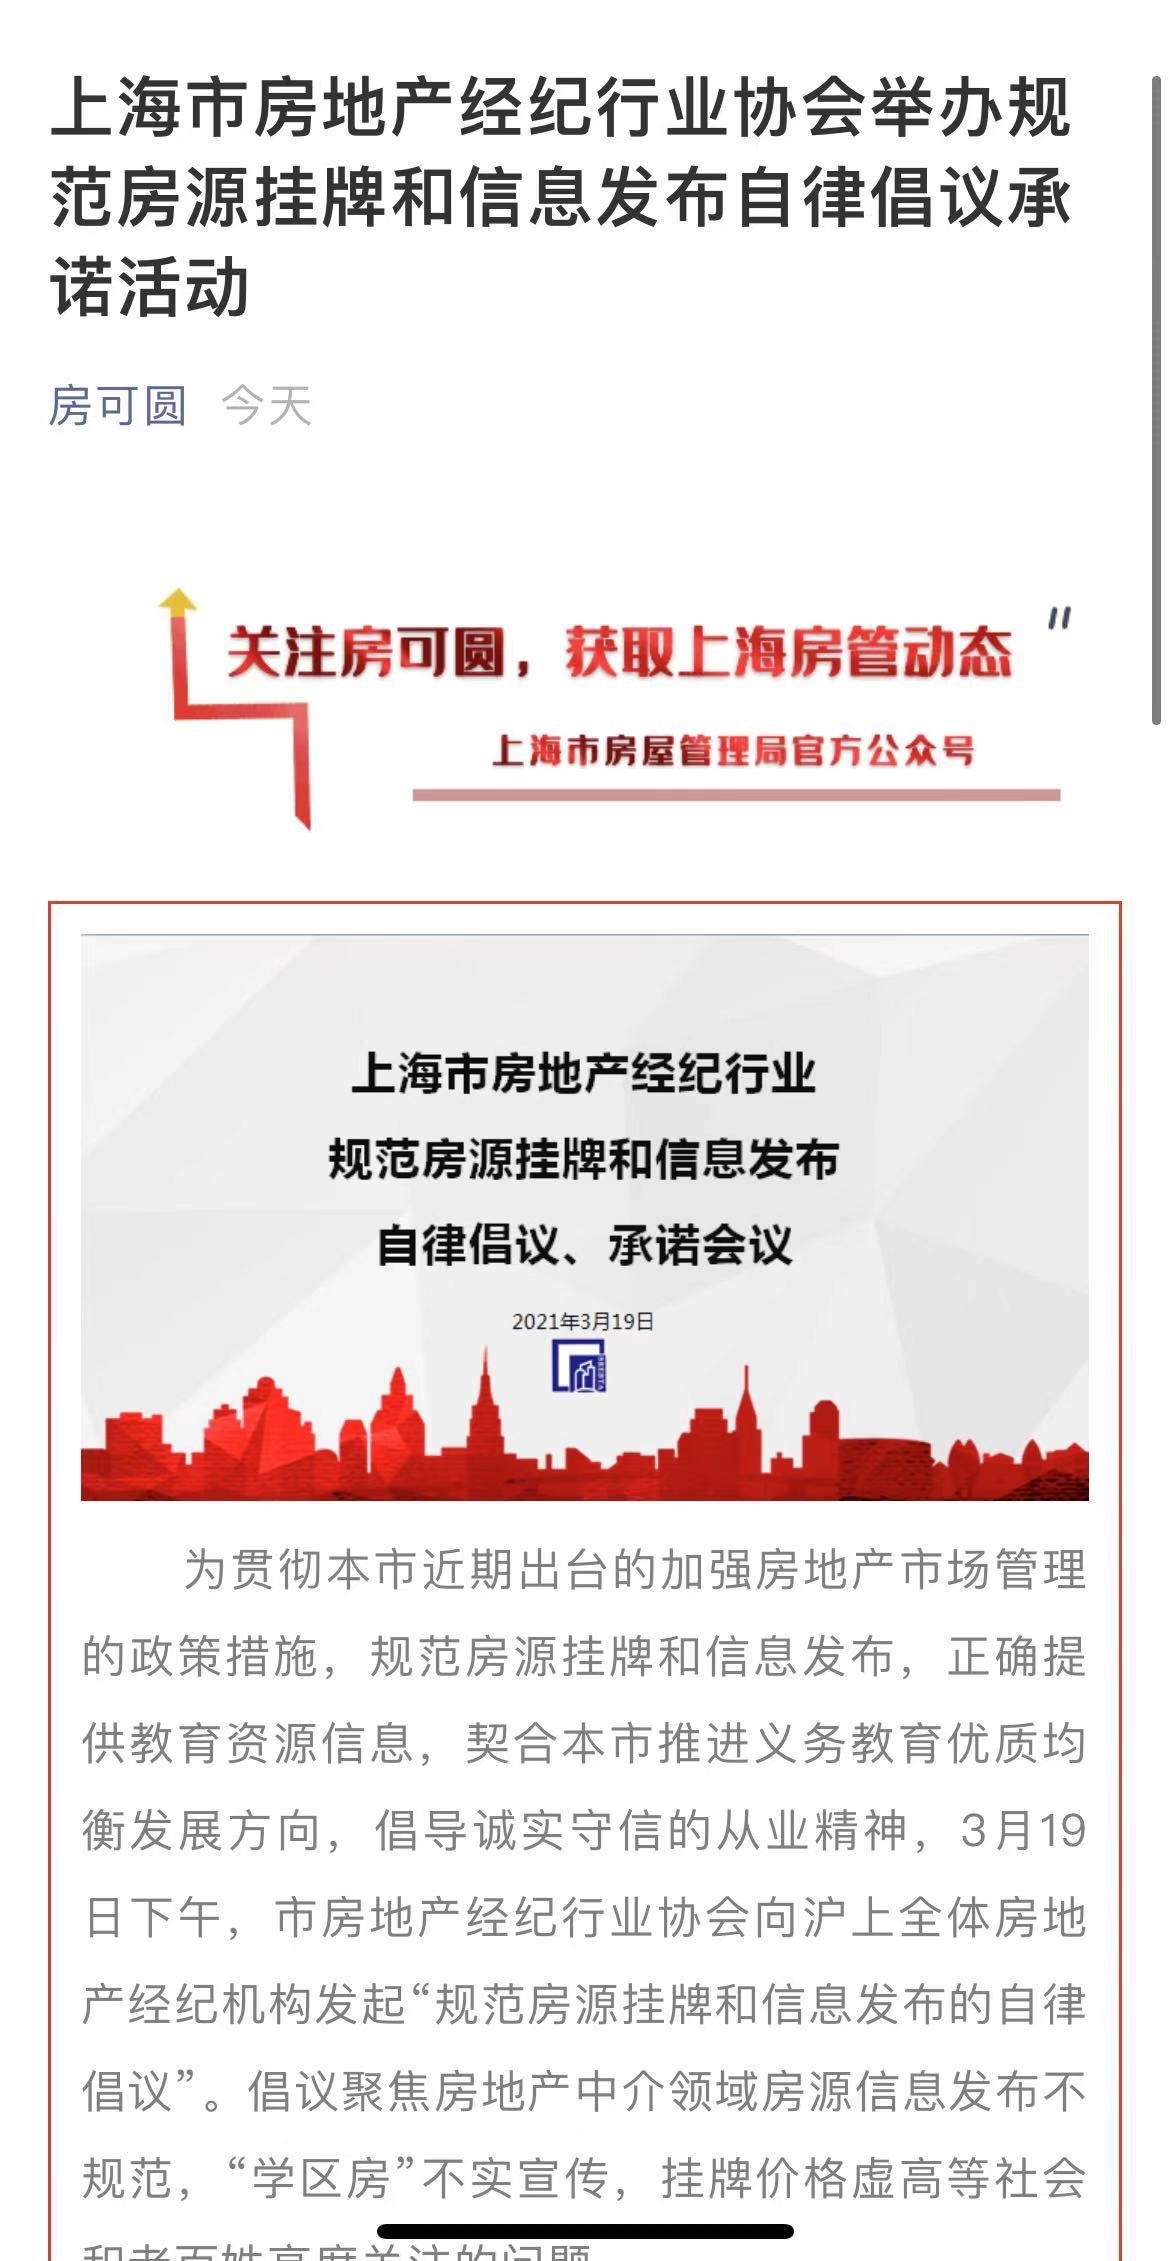 上海14家经纪机构和平台签承诺书 不使用“”进行推介、宣传